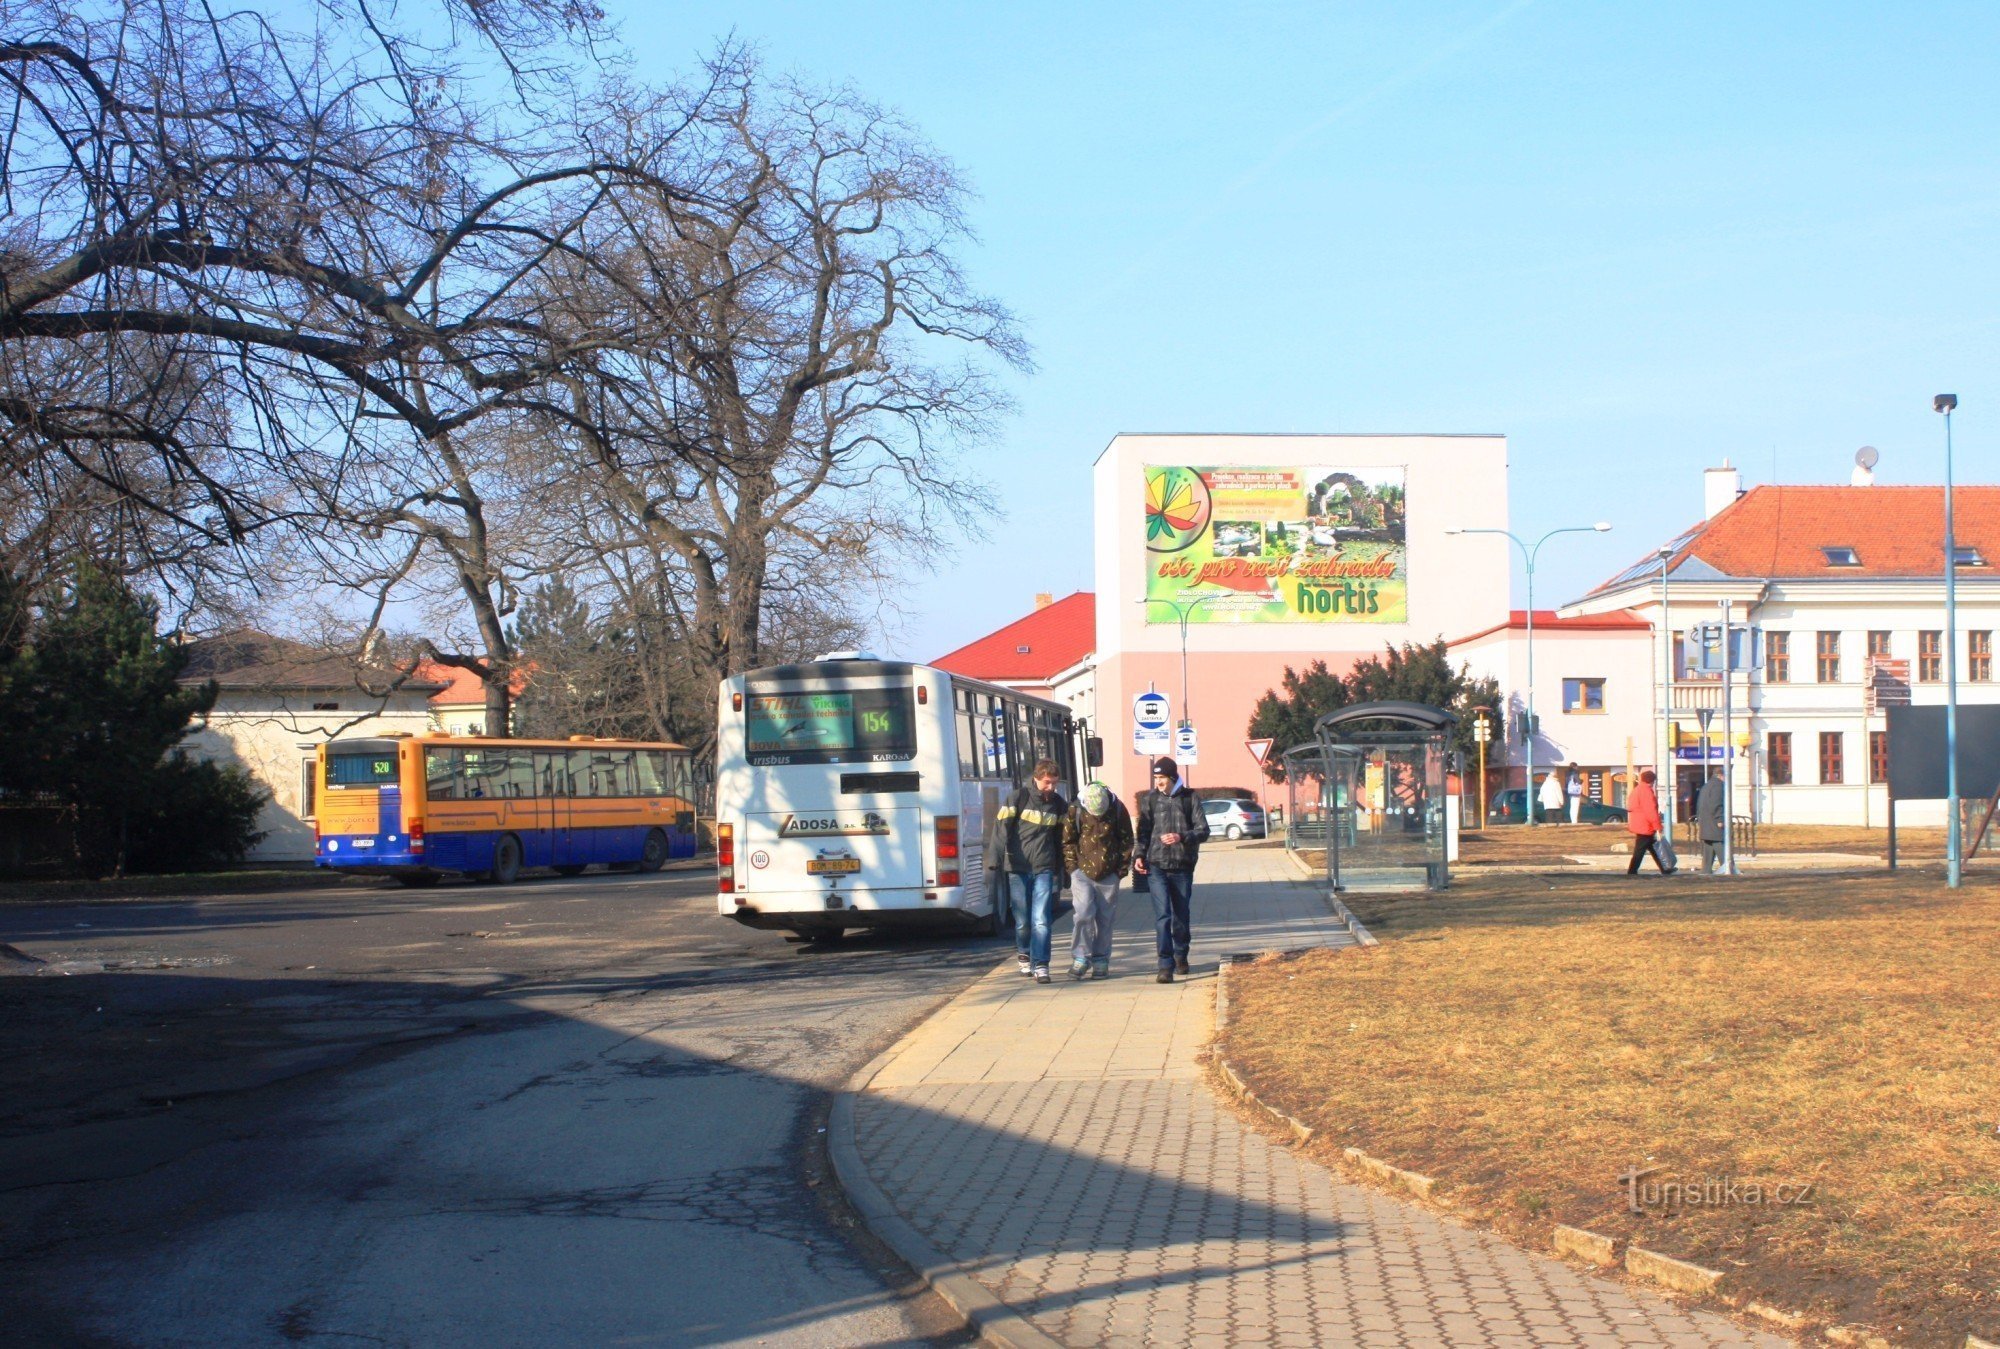 Stația de autobuz este situată la marginea parcului castelului